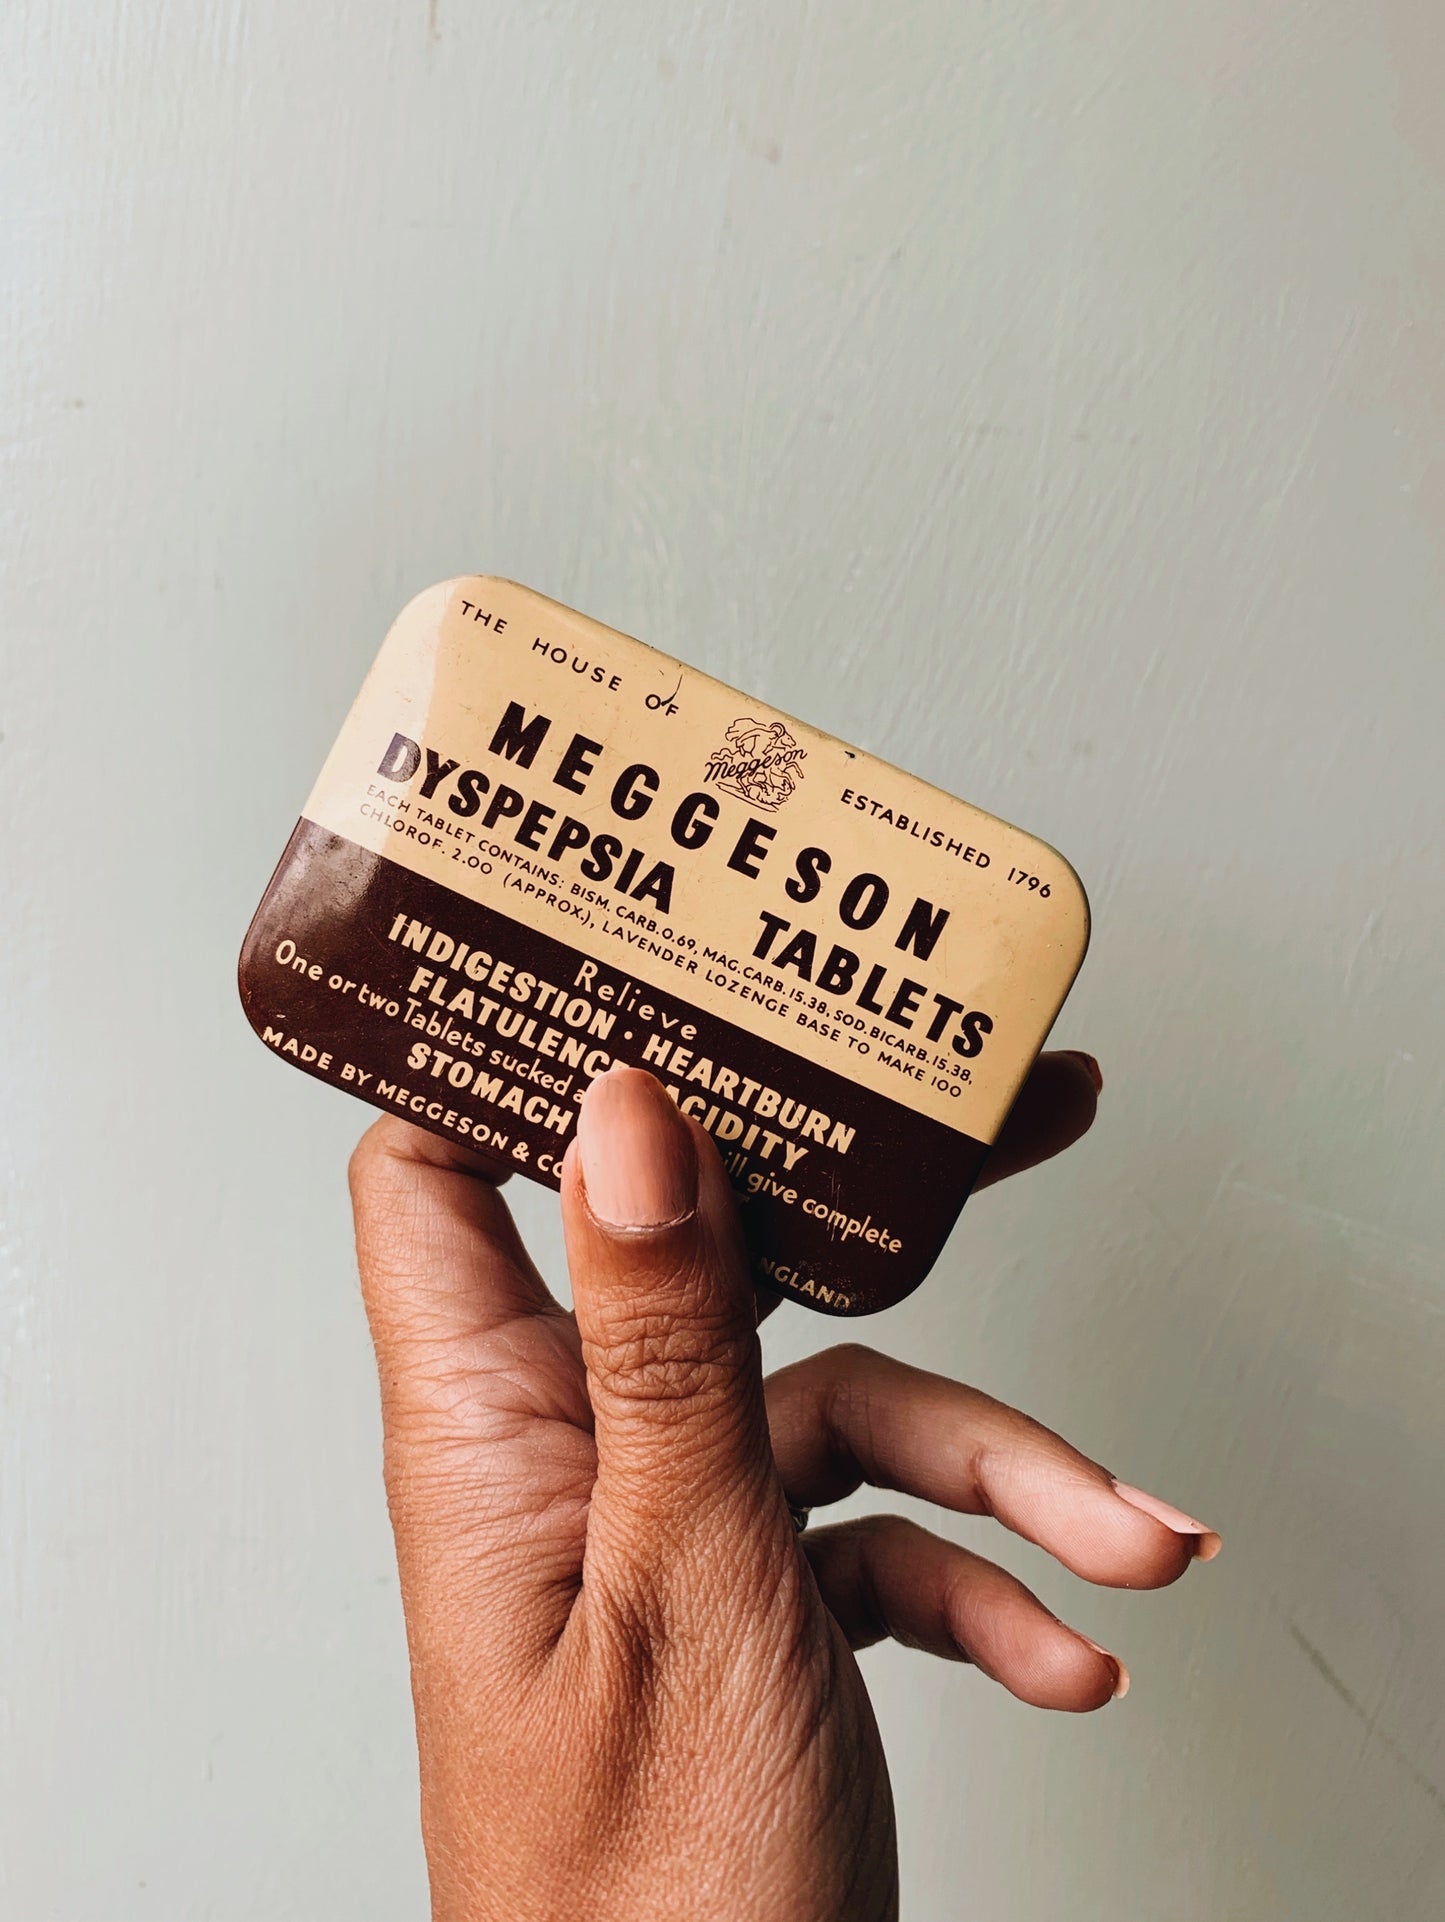 Vintage Meggeson Tin